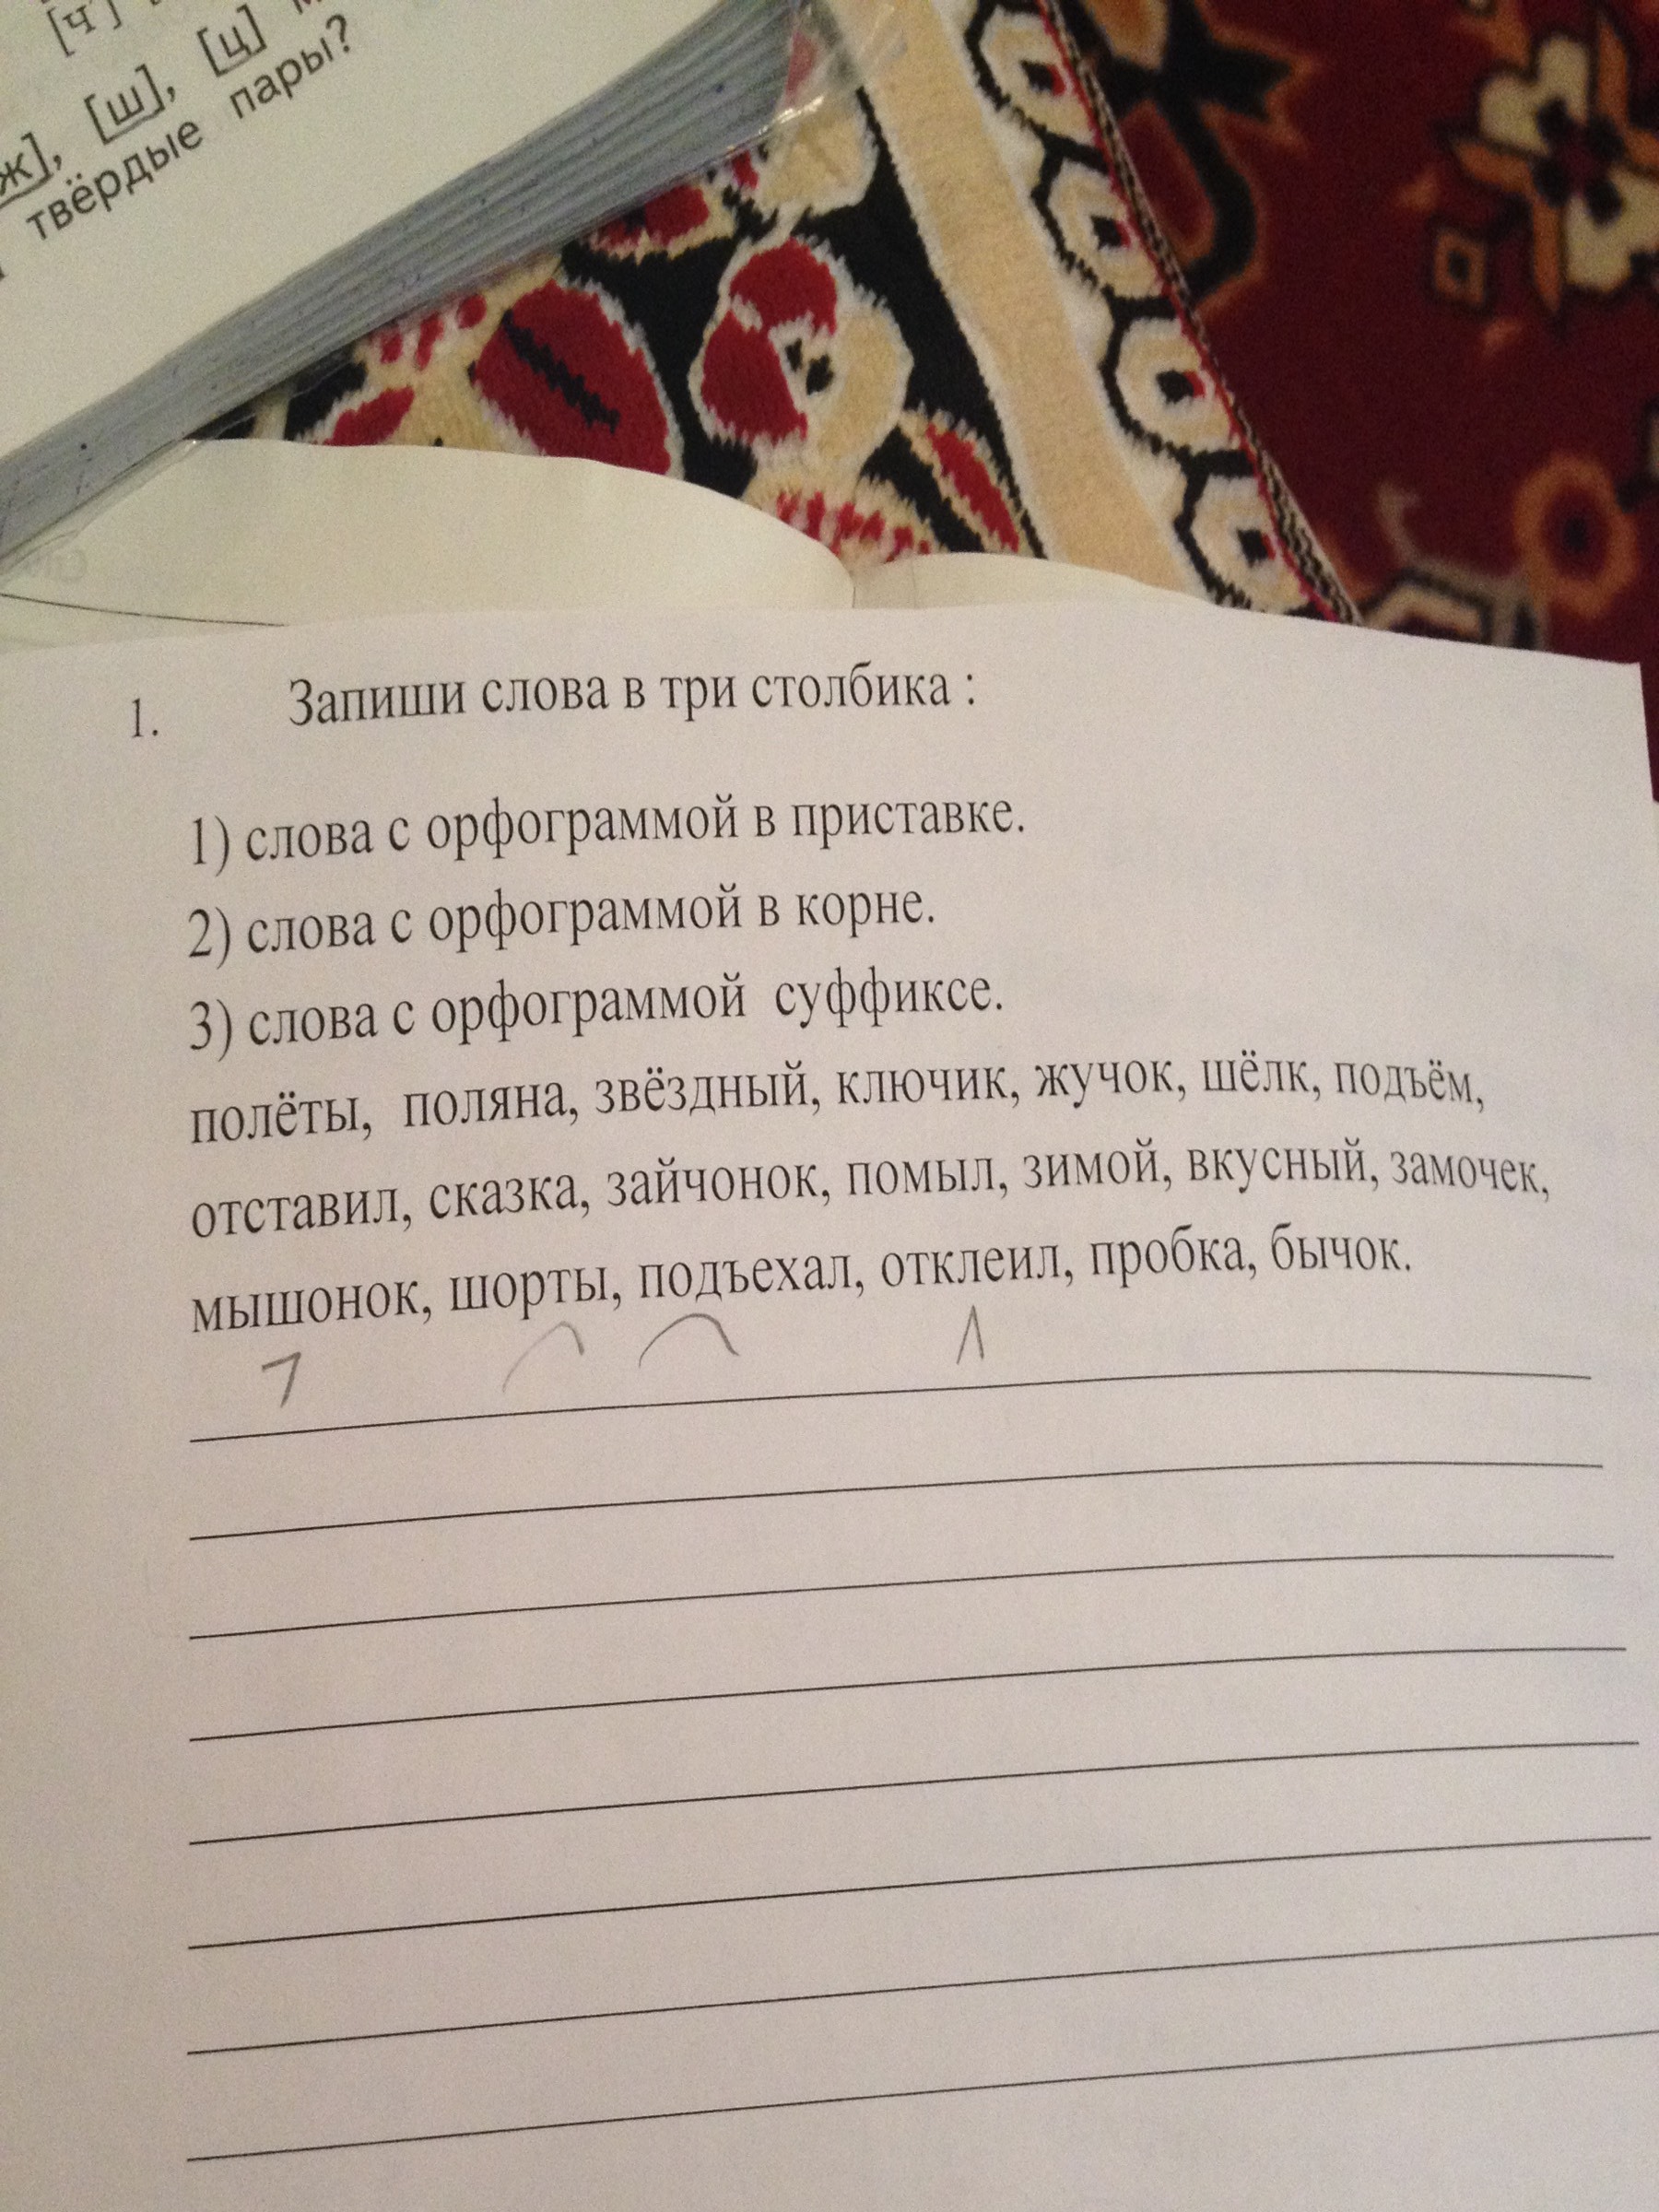 Русский язык запиши слова в 3 столбика. Запиши слова в три столбика. Зааиши слова втри Столбикова. Запишите слова в 3 столбика. Упражнение 1 запиши слова в 3 столбика.